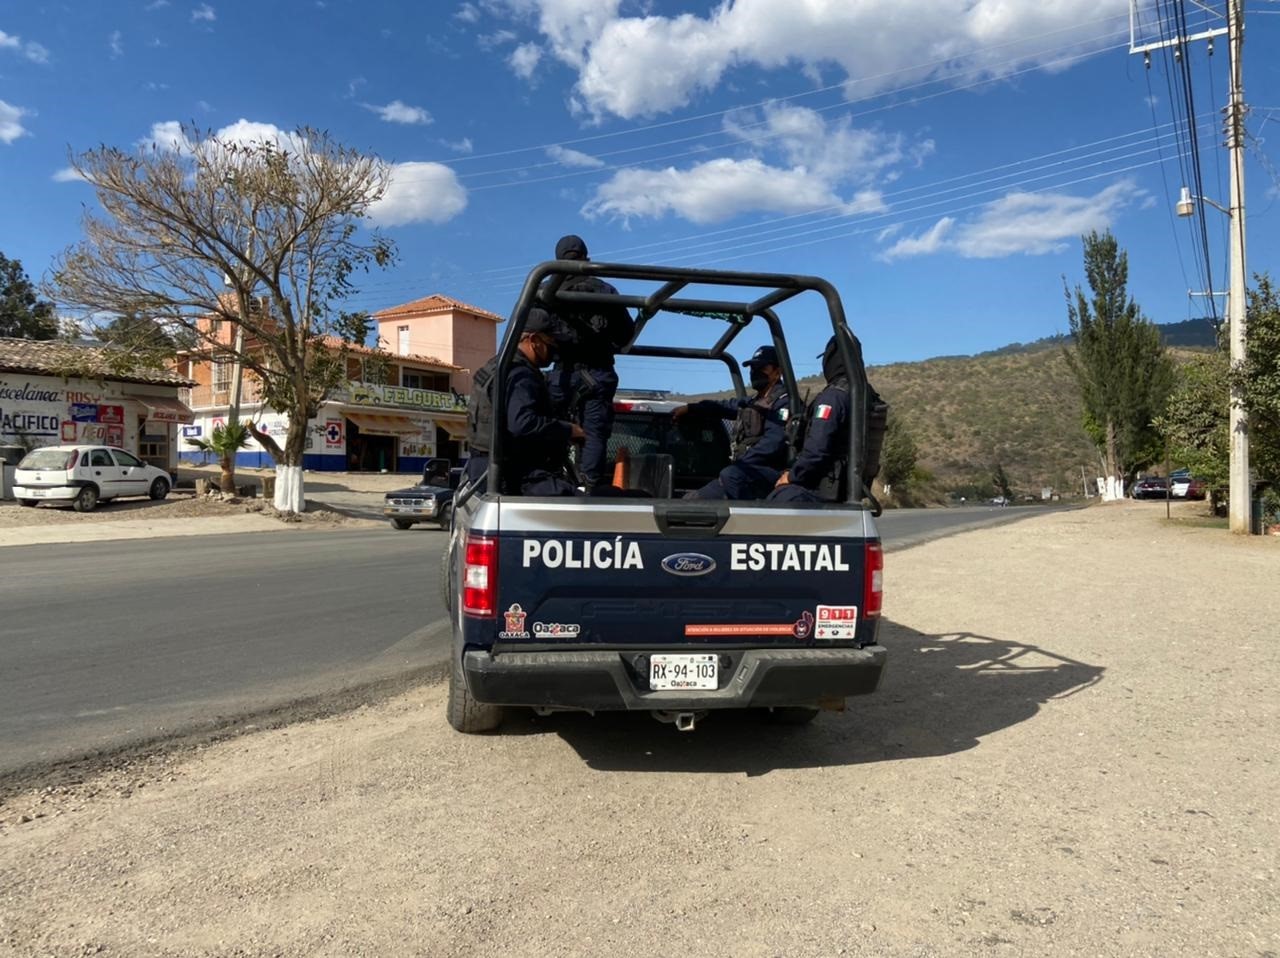 Guanajuato - Muere policía en cumplimiento del deber - Página 2 OKMVT5PV7BBR7P6DR2YU5NREPM